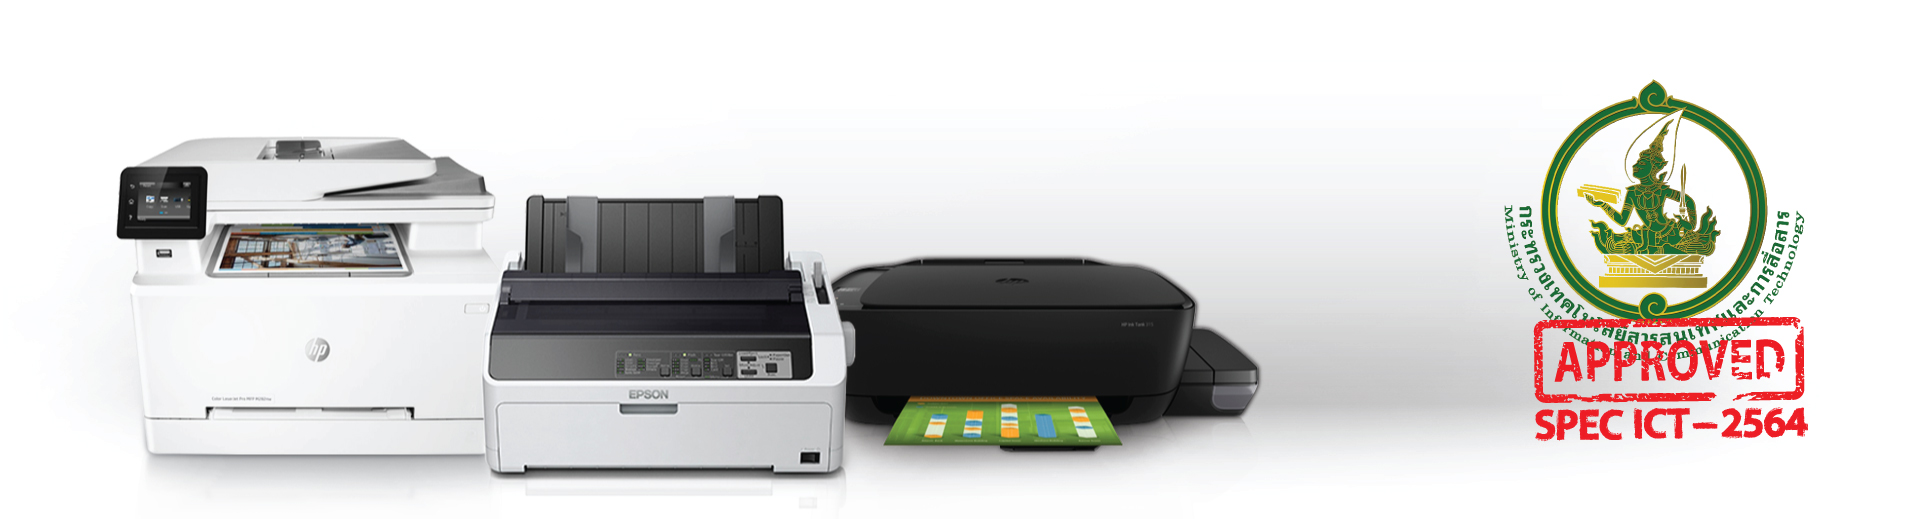 เครื่องพิมพ์ชนิด Dot Matrix Printer แบบแคร่สั้น ราคา 22,000 บาท